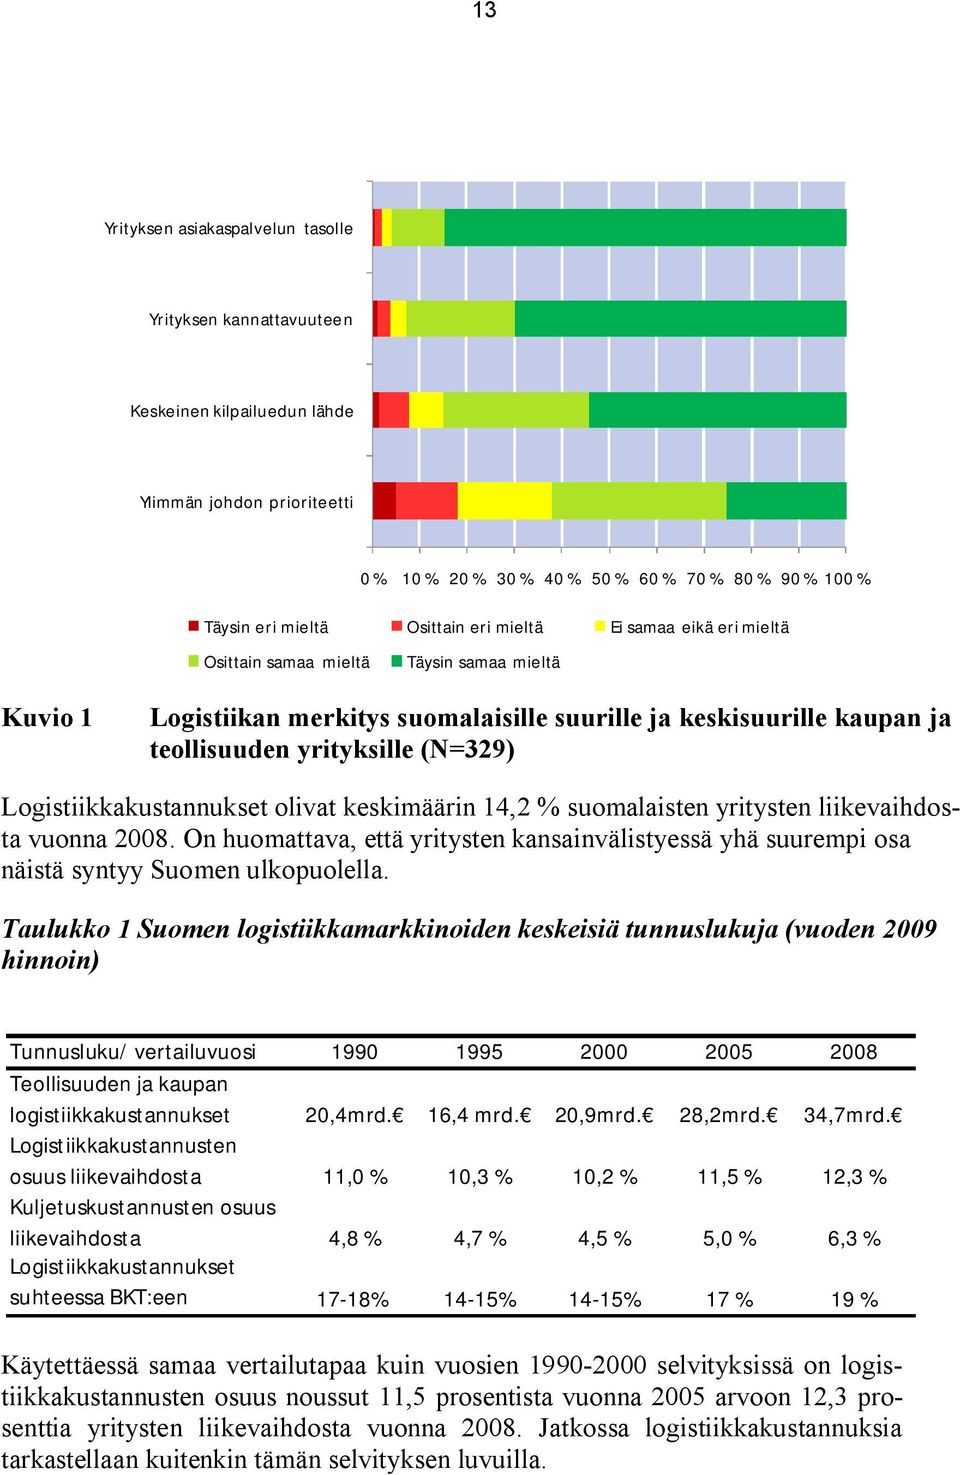 Logistiikkakustannukset olivat keskimäärin 14,2 % suomalaisten yritysten liikevaihdosta vuonna 2008.